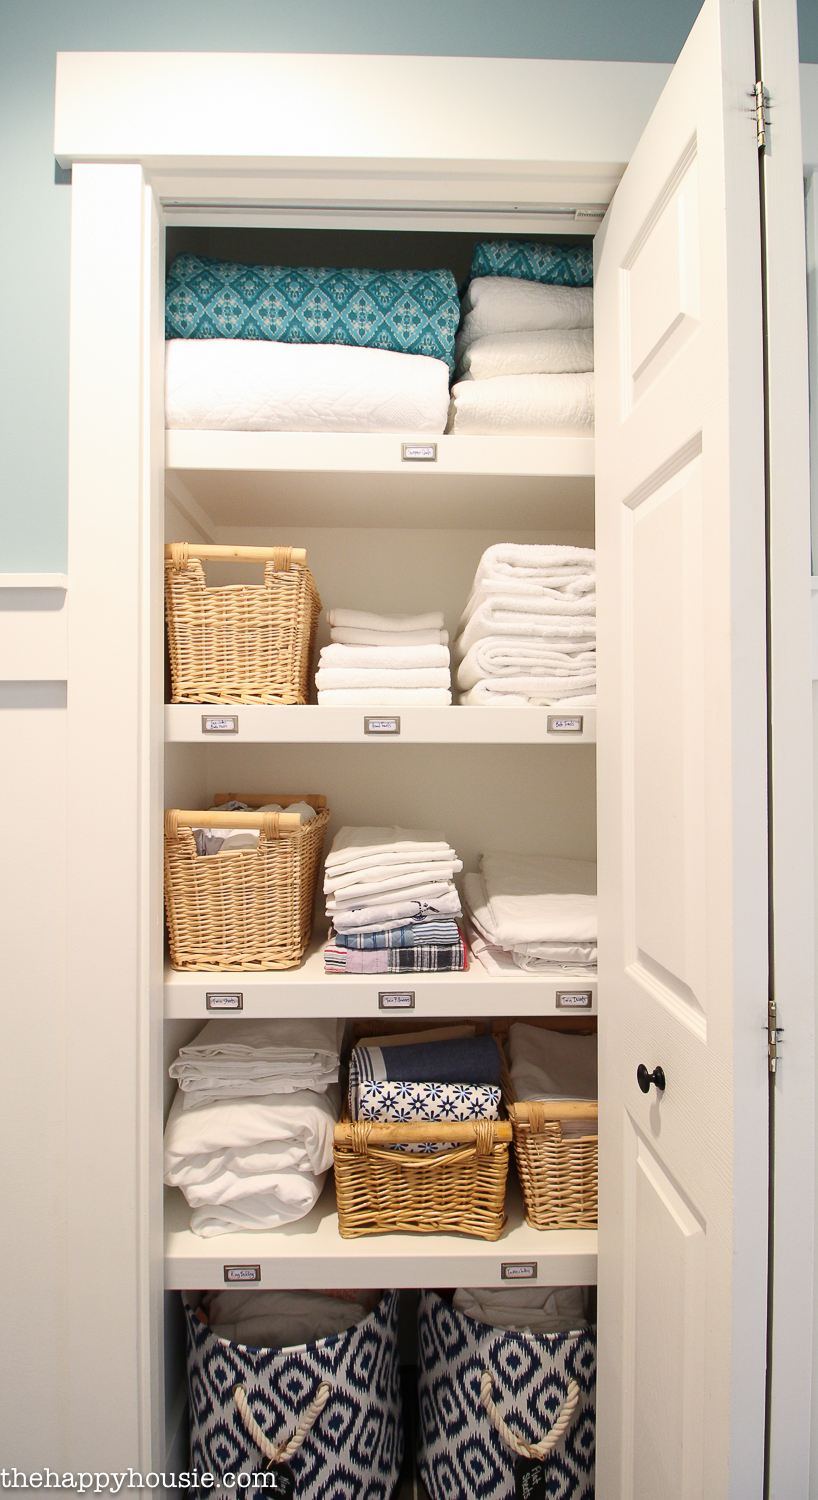 The linen closet.